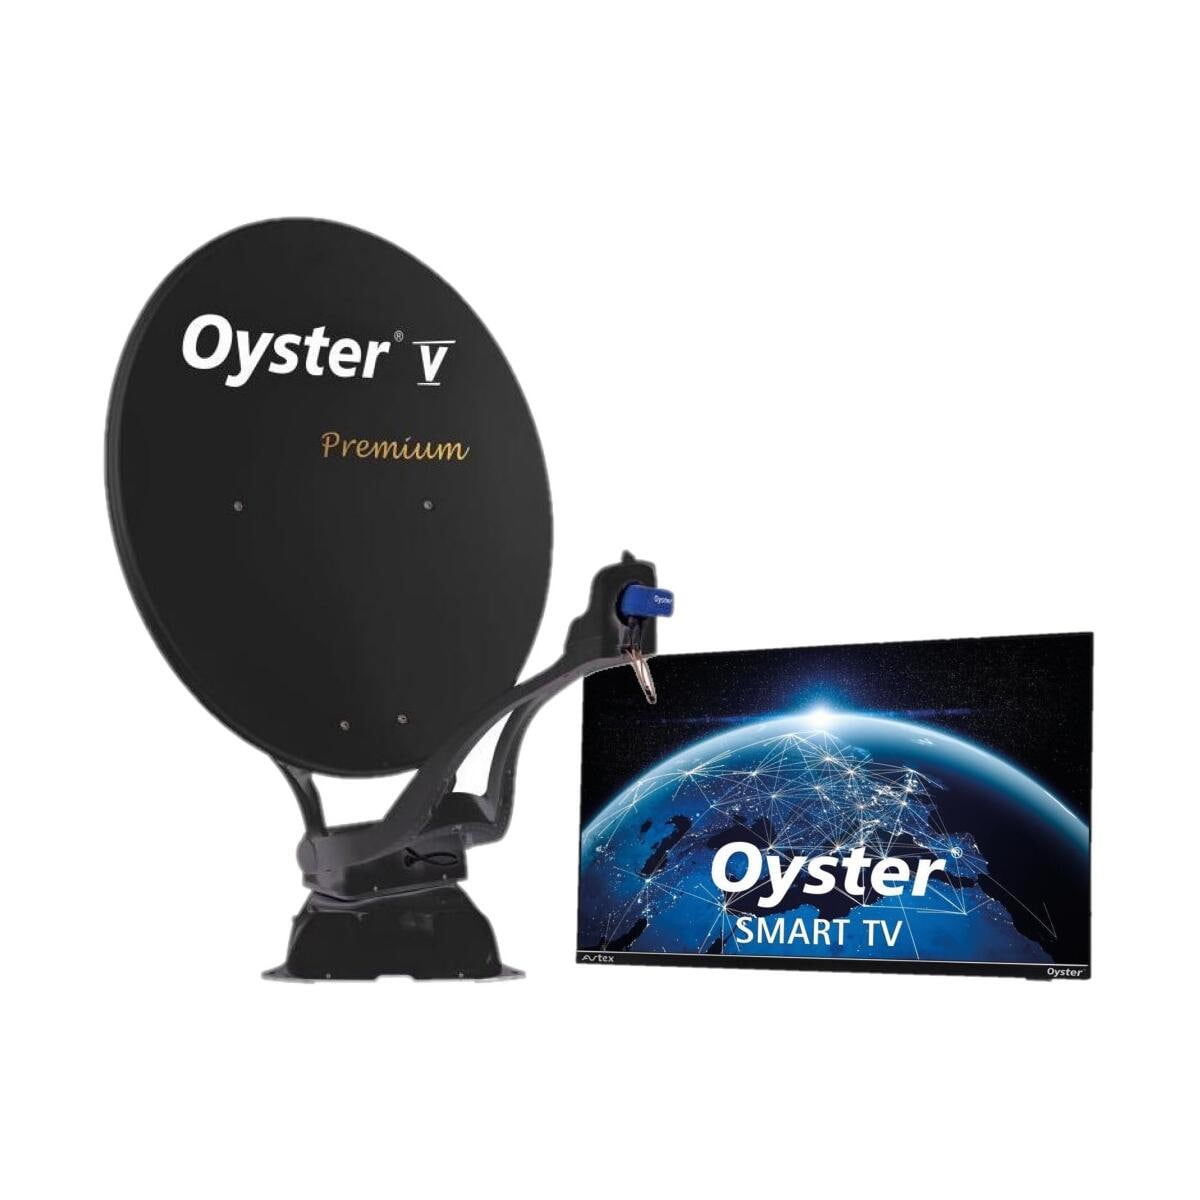 TEN HAAFT Automatische Sat Anlage Oyster V Premium und Oyster Smart TV 24